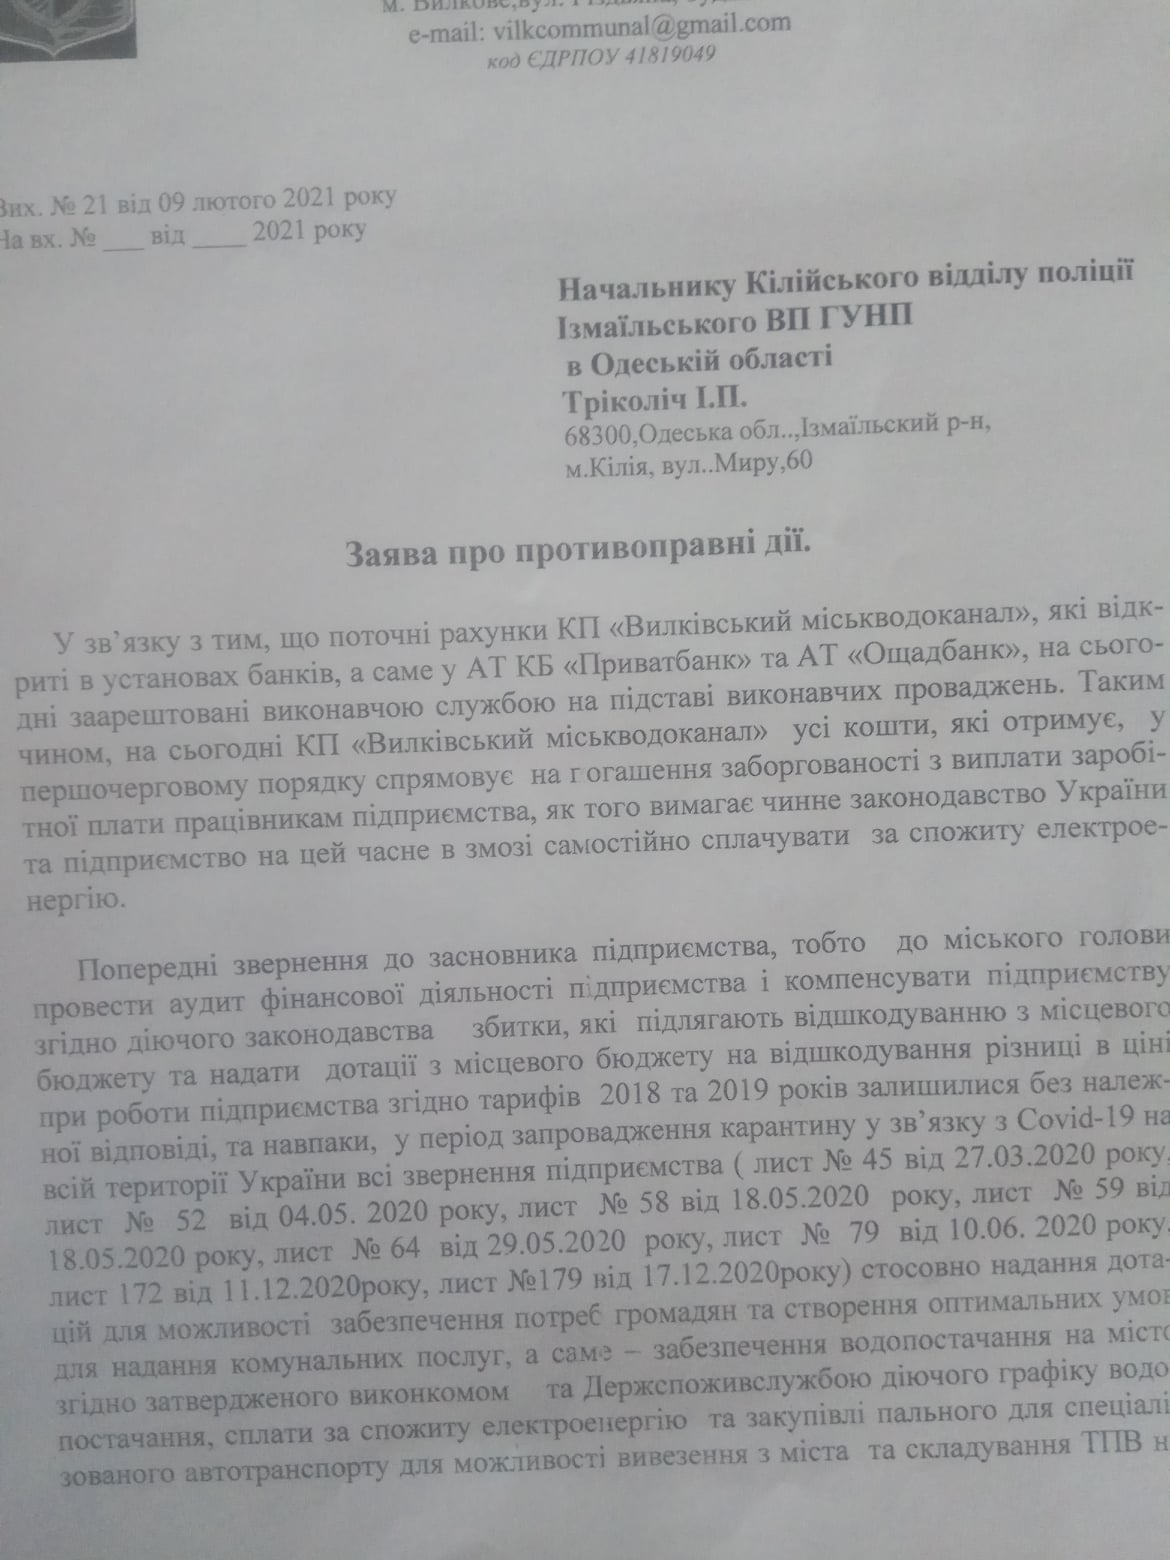 Безразличие местной власти: в Вилково "Горводоканал" обесточен из-за долов за электричество. Предприятие обратилось в полицию